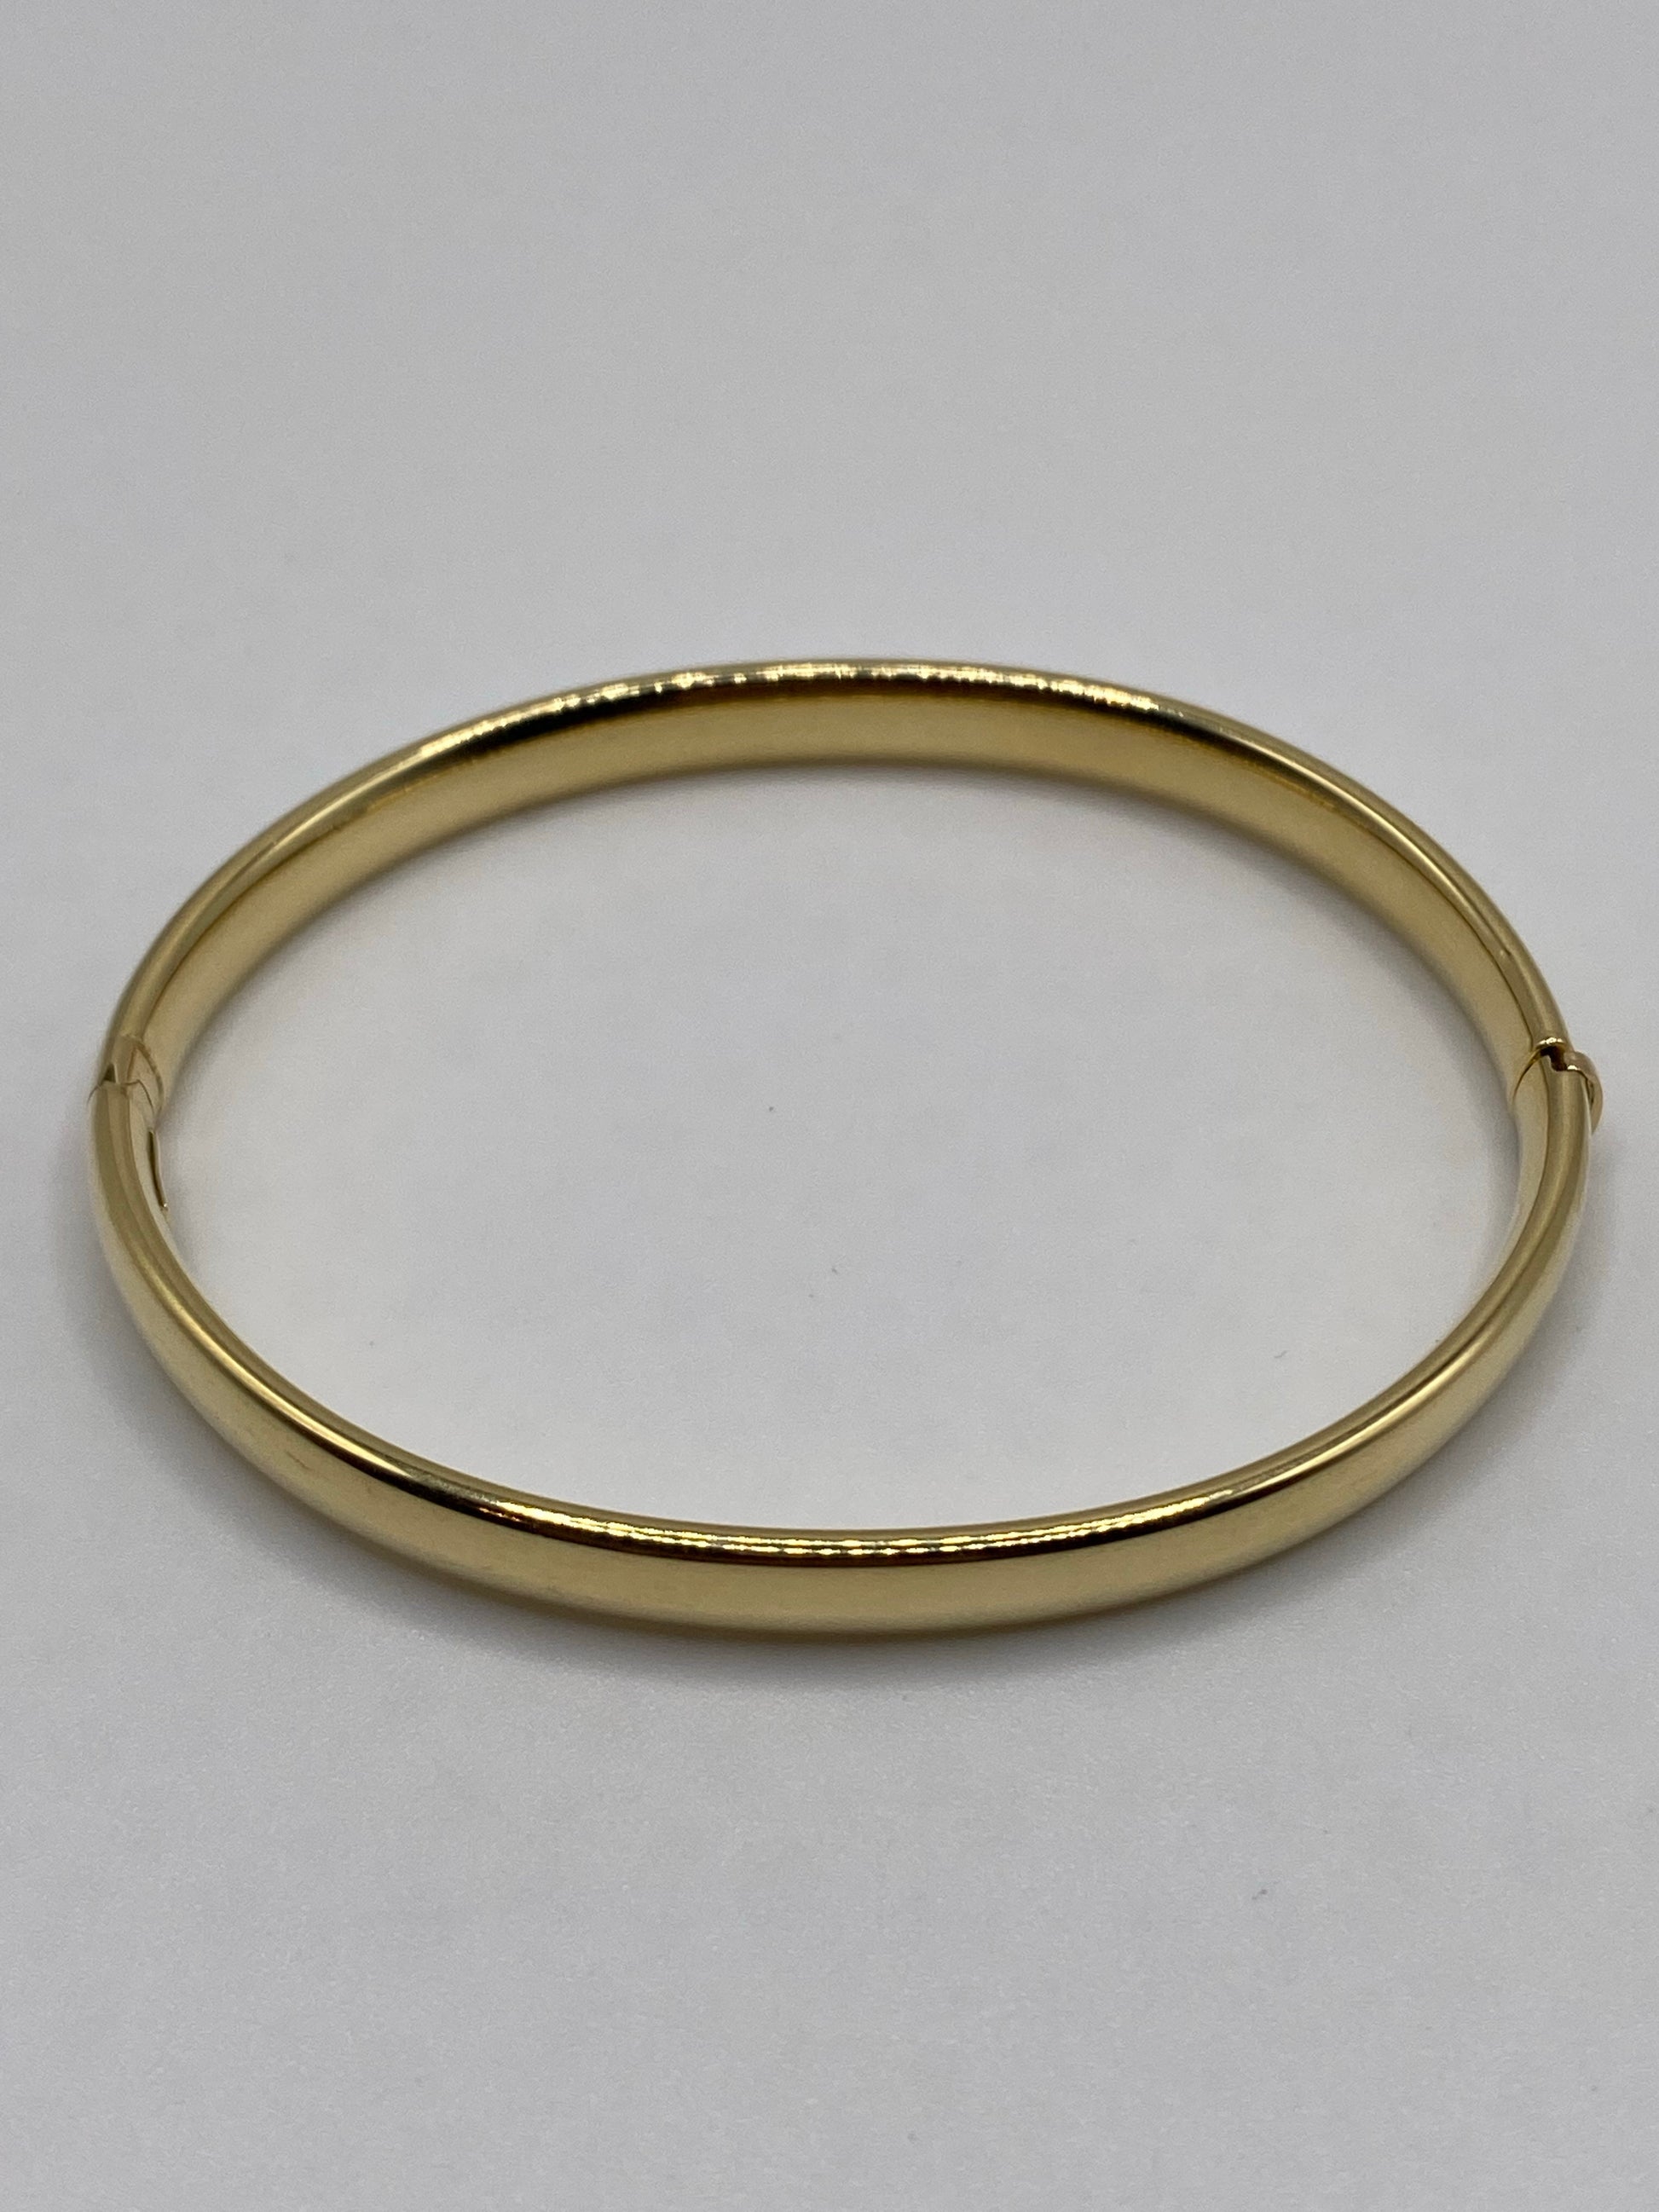 14K Gold] 6mm Open Bangle Bracelet/ Barrel *Made-to-order*TRDSP